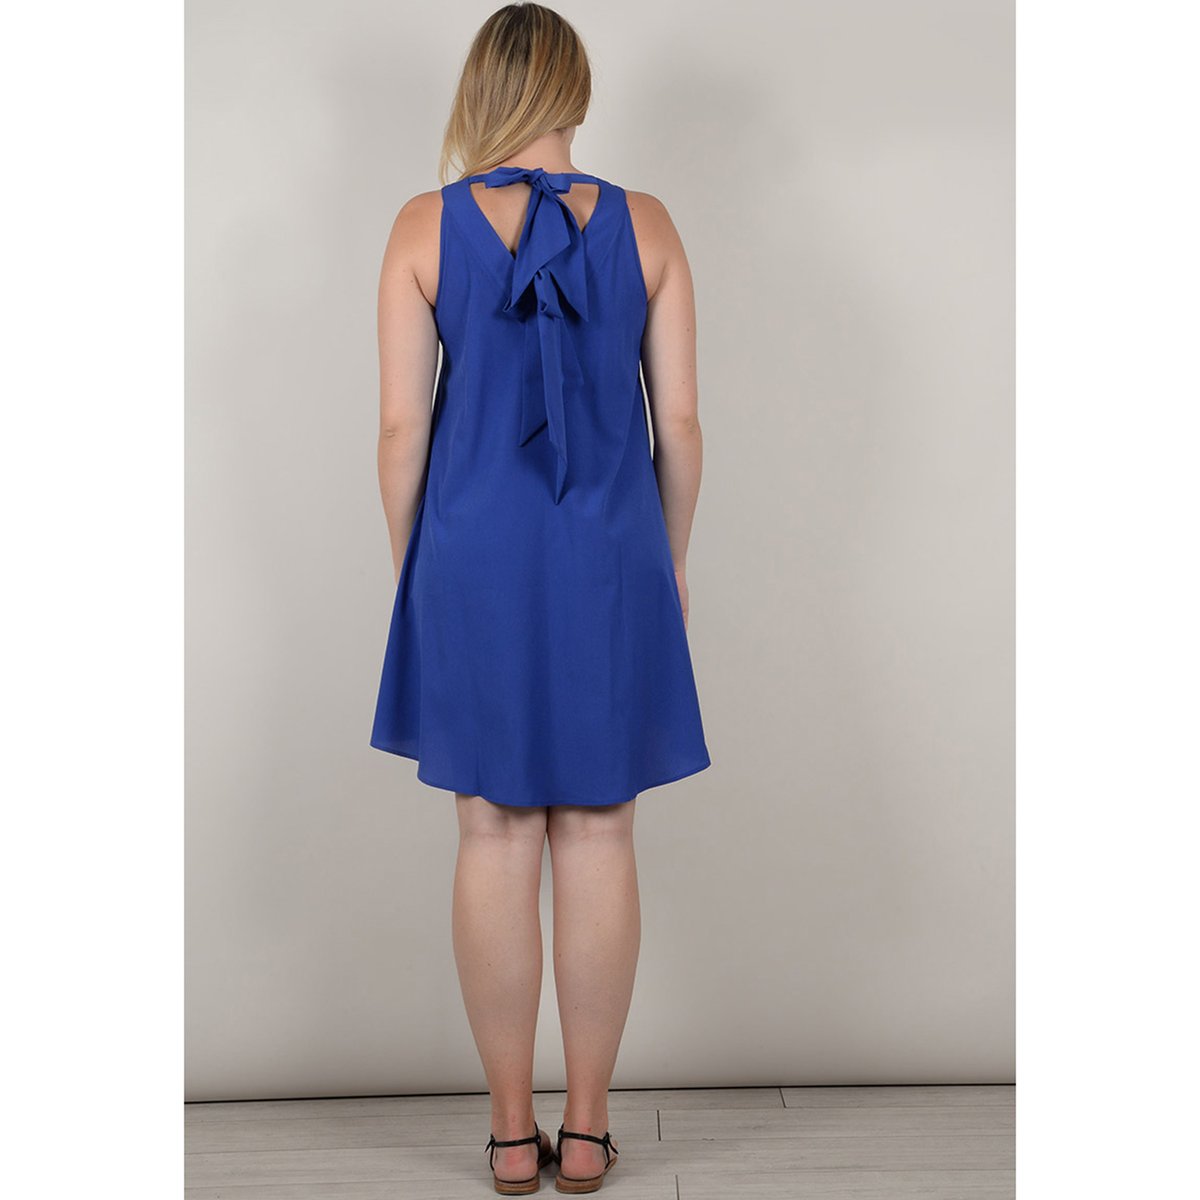 Платье La Redoute Расклешенное короткое с длинными рукавами 46 (FR) - 52 (RUS) синий, размер 46 (FR) - 52 (RUS) Расклешенное короткое с длинными рукавами 46 (FR) - 52 (RUS) синий - фото 2